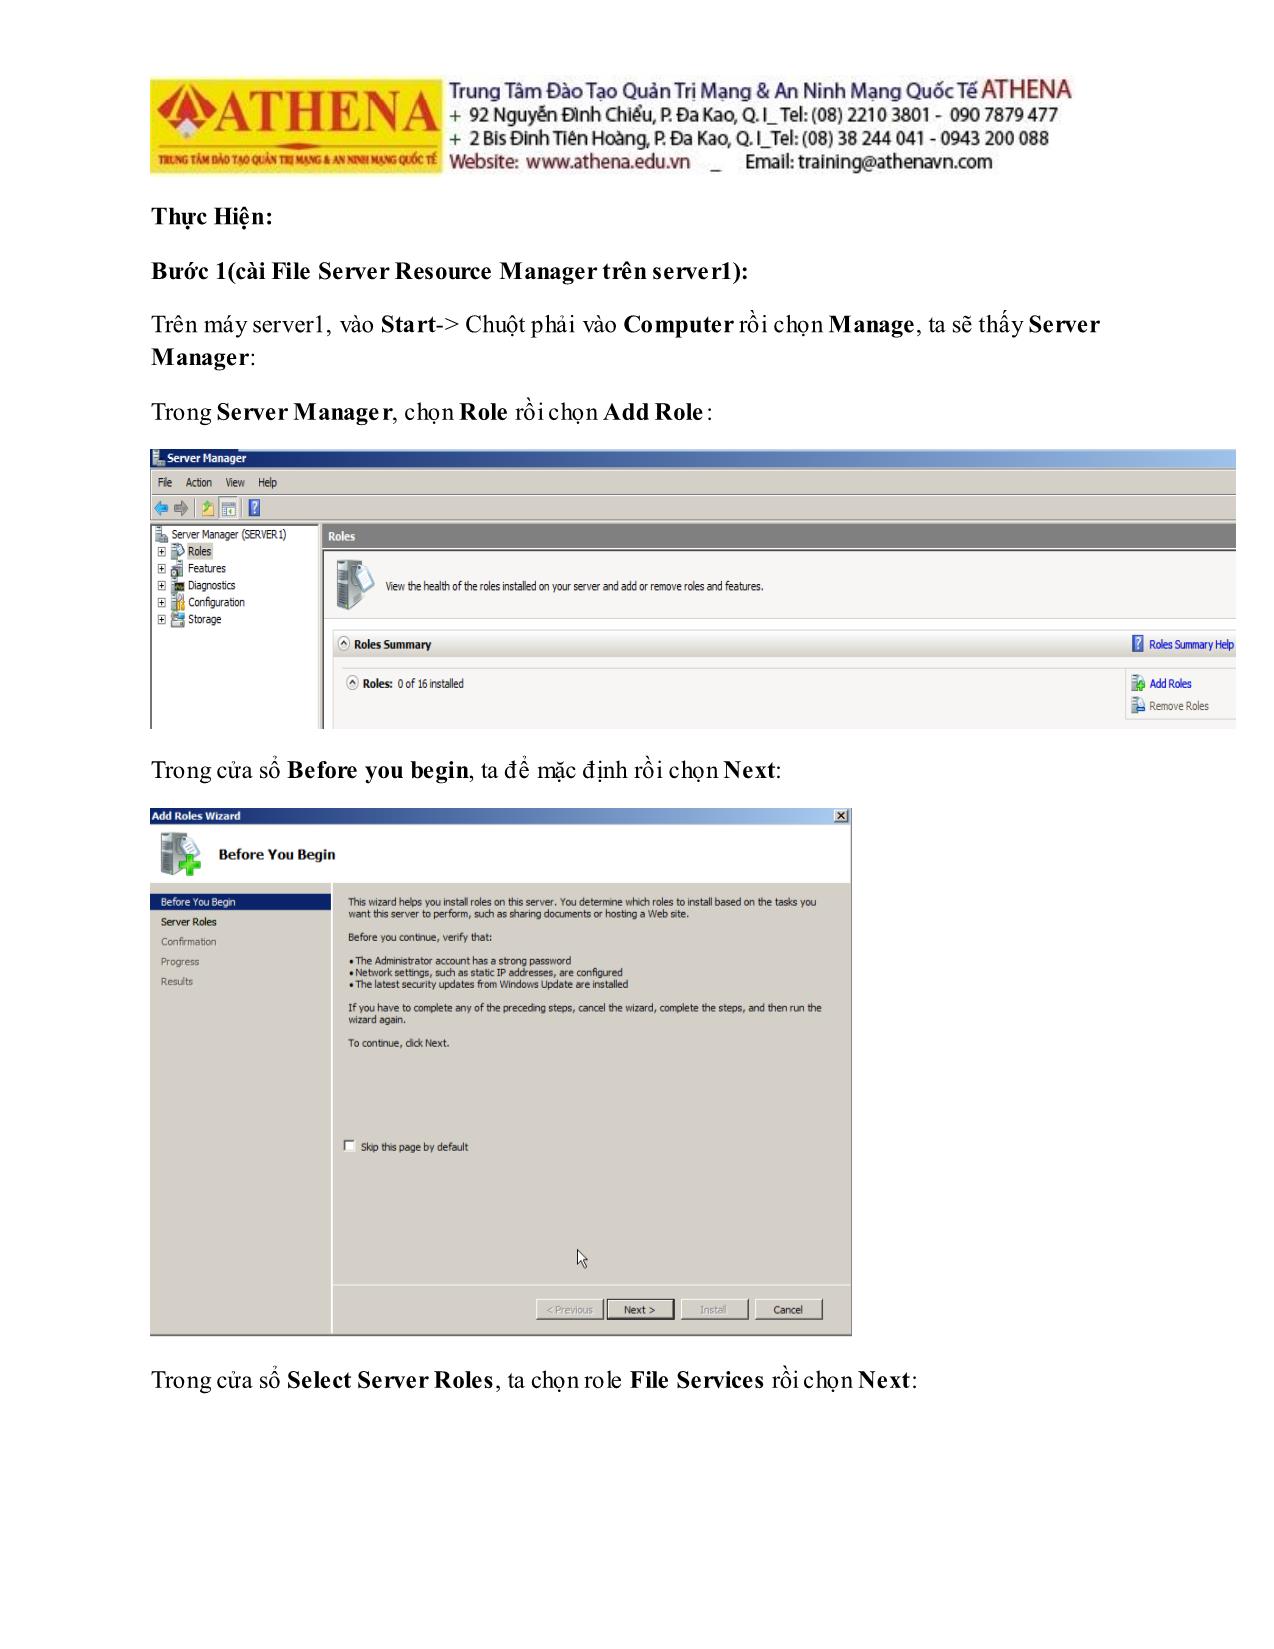 Tài liệu Hướng dẫn thực hành quản trị mạng - File server resource manager trang 2